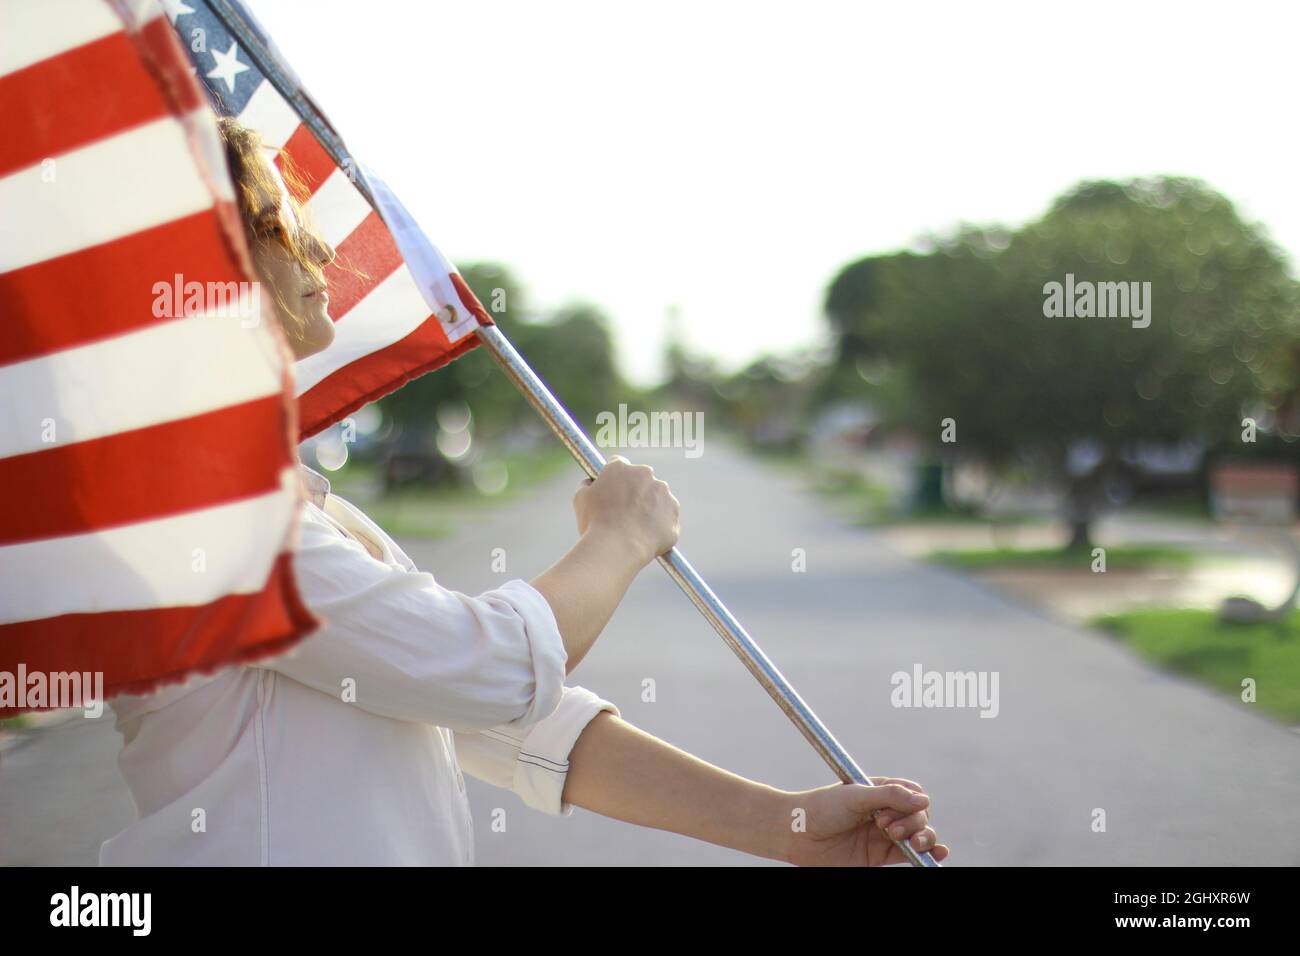 Joven pelirroja hispana y caucásica con gafas de sol que ondean la bandera americana afuera. Foto de stock